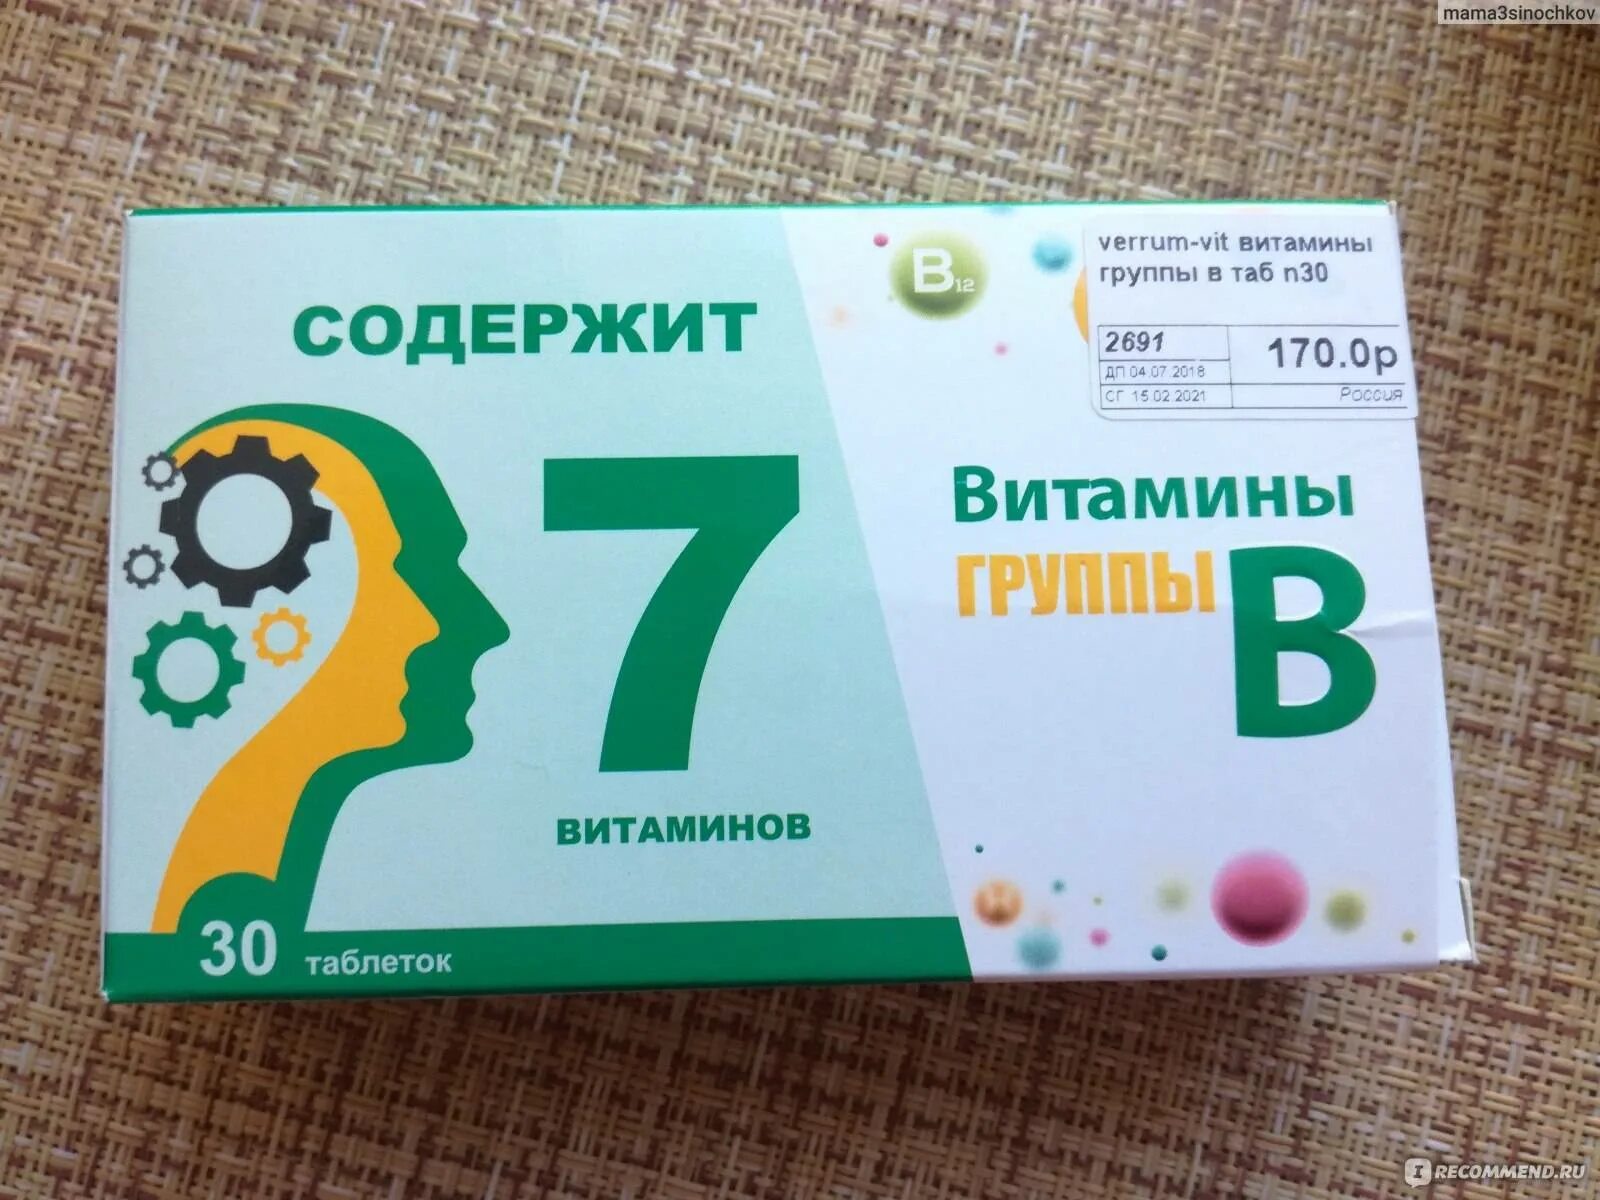 Вит группы б. Витаминный комплекс в12 в6. Комплекс витаминов в2 в6 в12. Витаминный комплекс в6 в9 в12. Витамины б1 б6 б12 в таблетках.